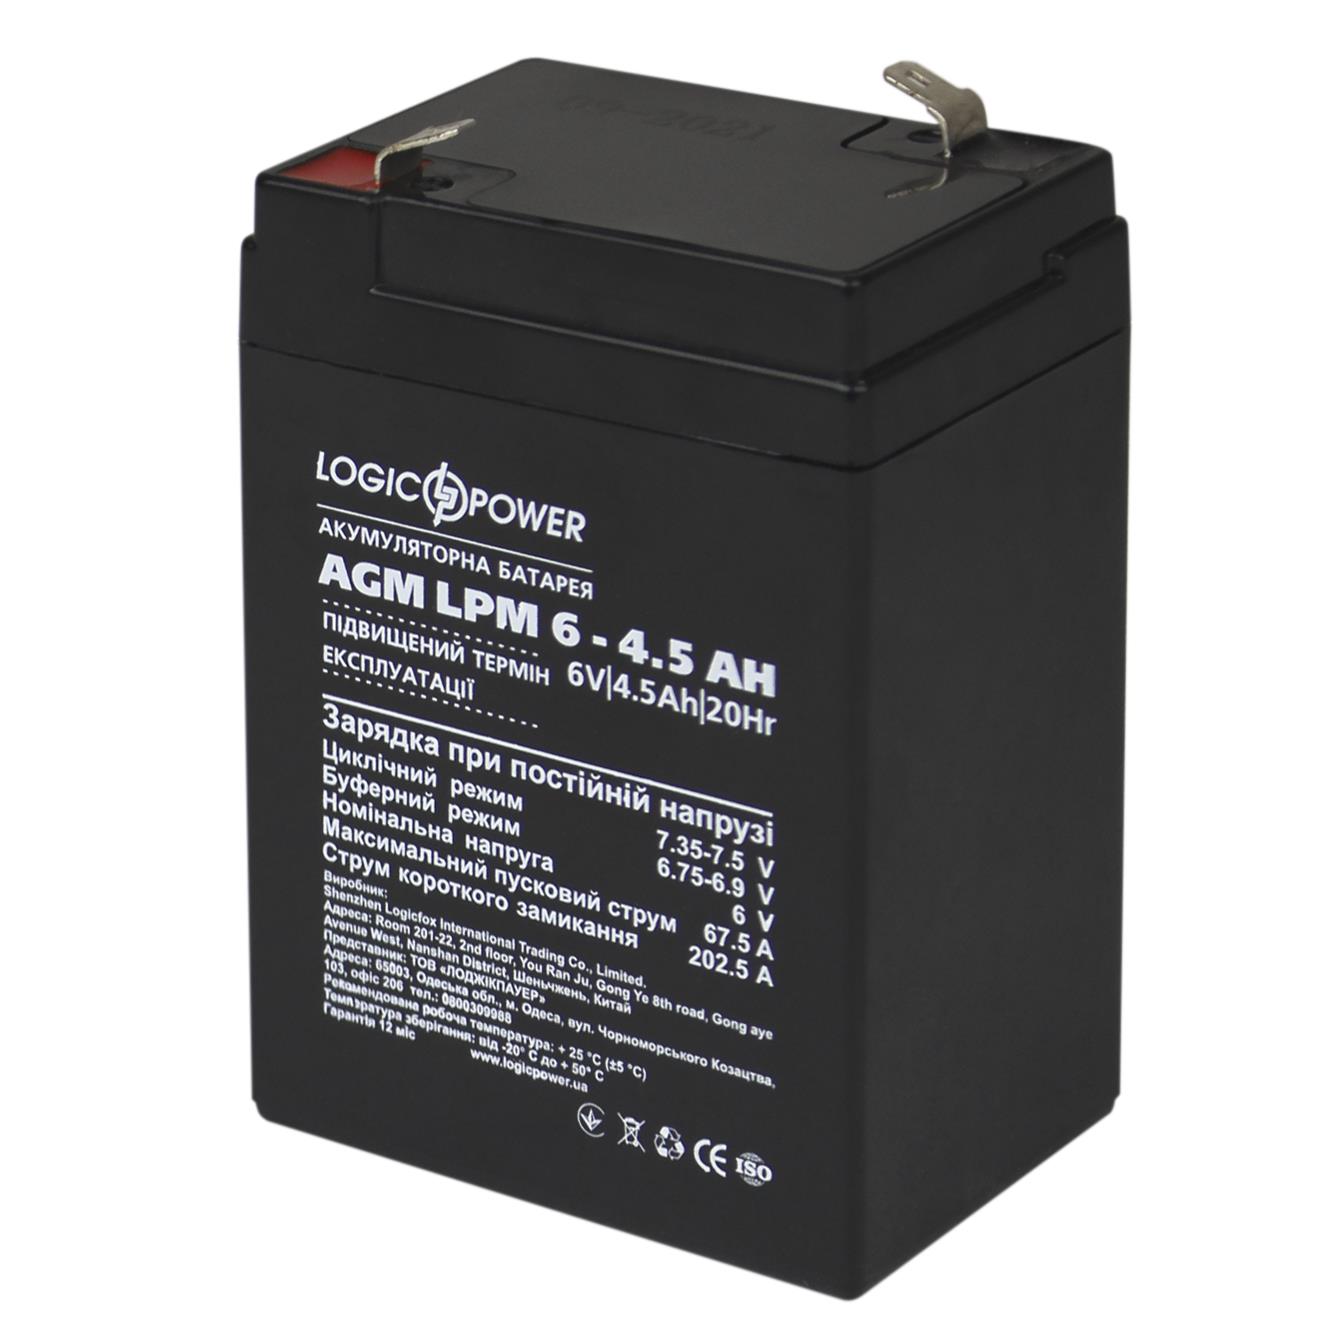 Купить аккумулятор свинцово-кислотный LogicPower AGM LPM 6V - 4.5 Ah (3860) в Киеве